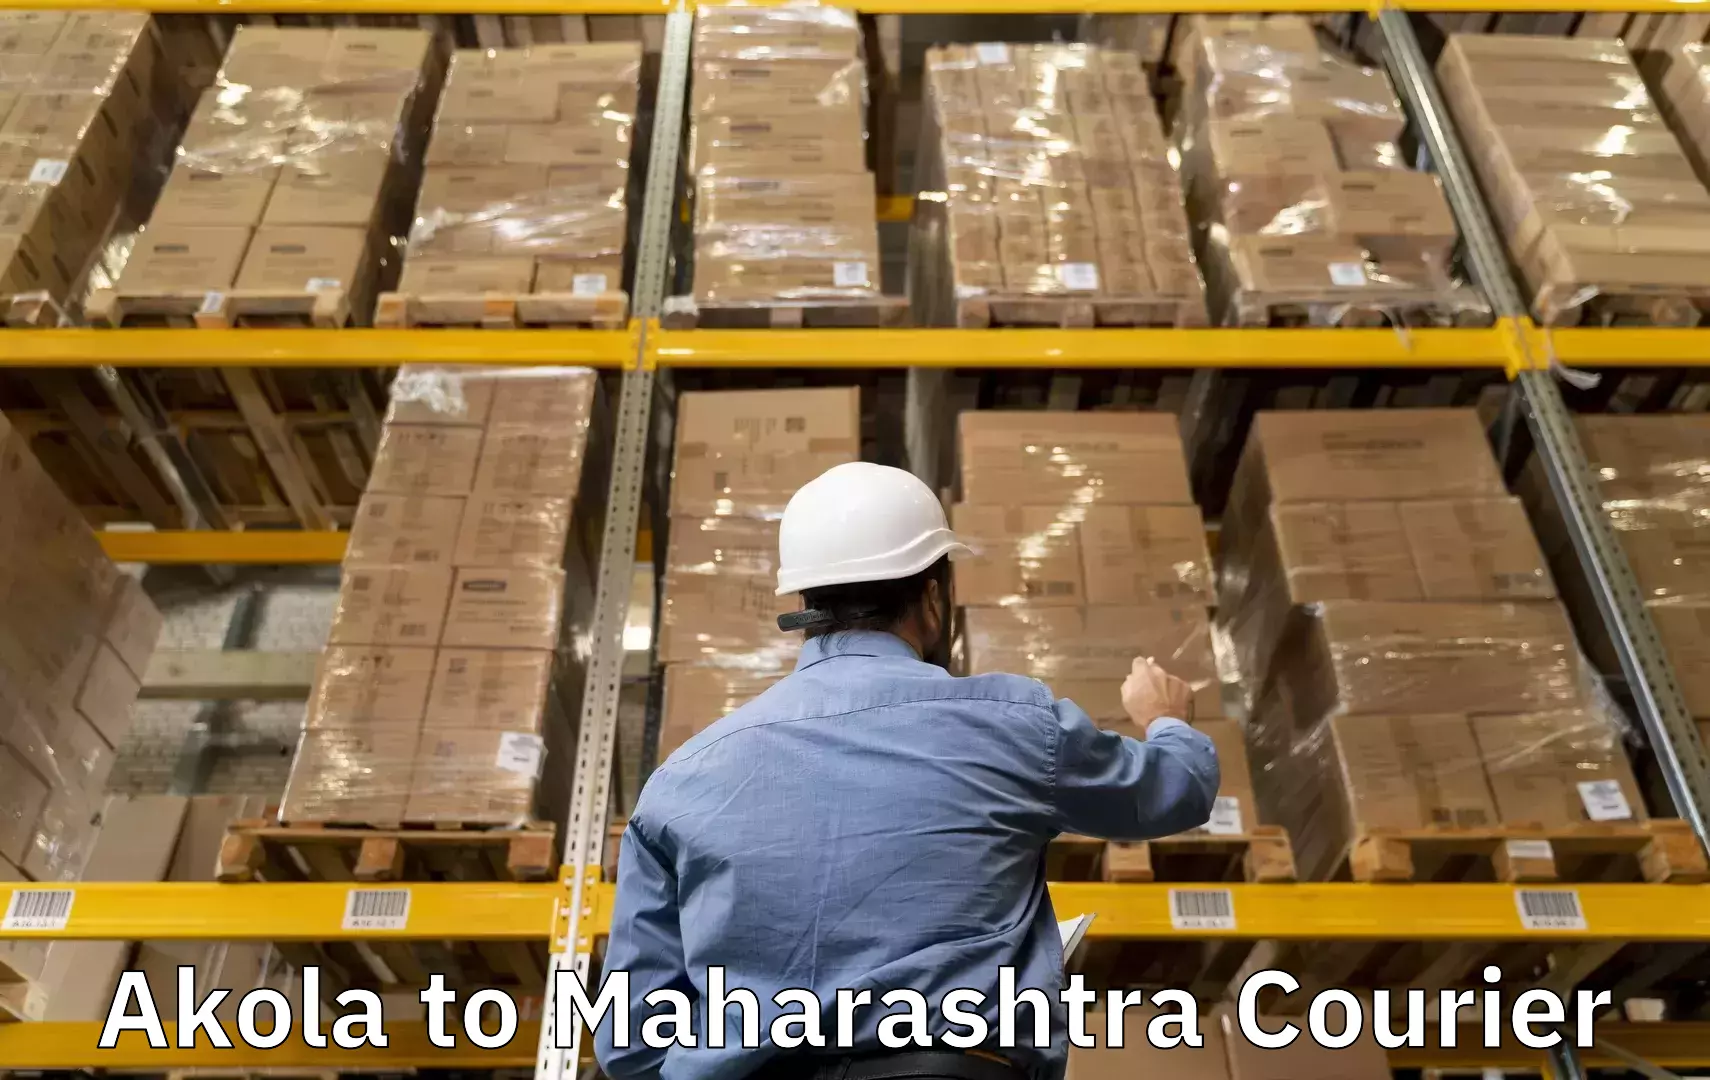 Baggage shipping optimization Akola to Maharashtra